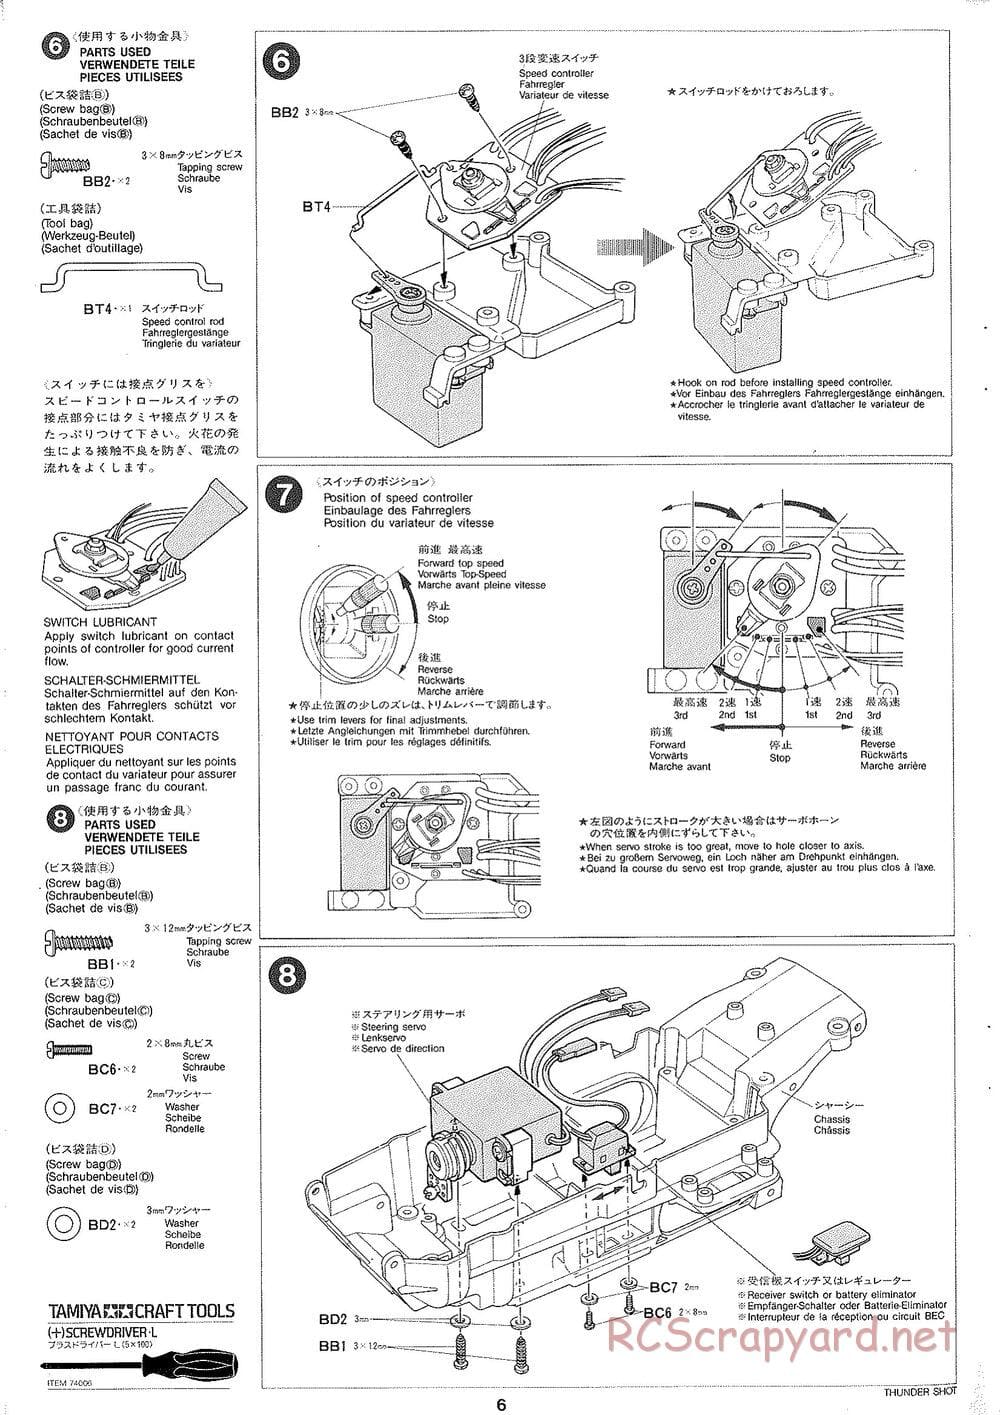 Tamiya - Thunder Shot - TS1 Chassis - Manual - Page 7